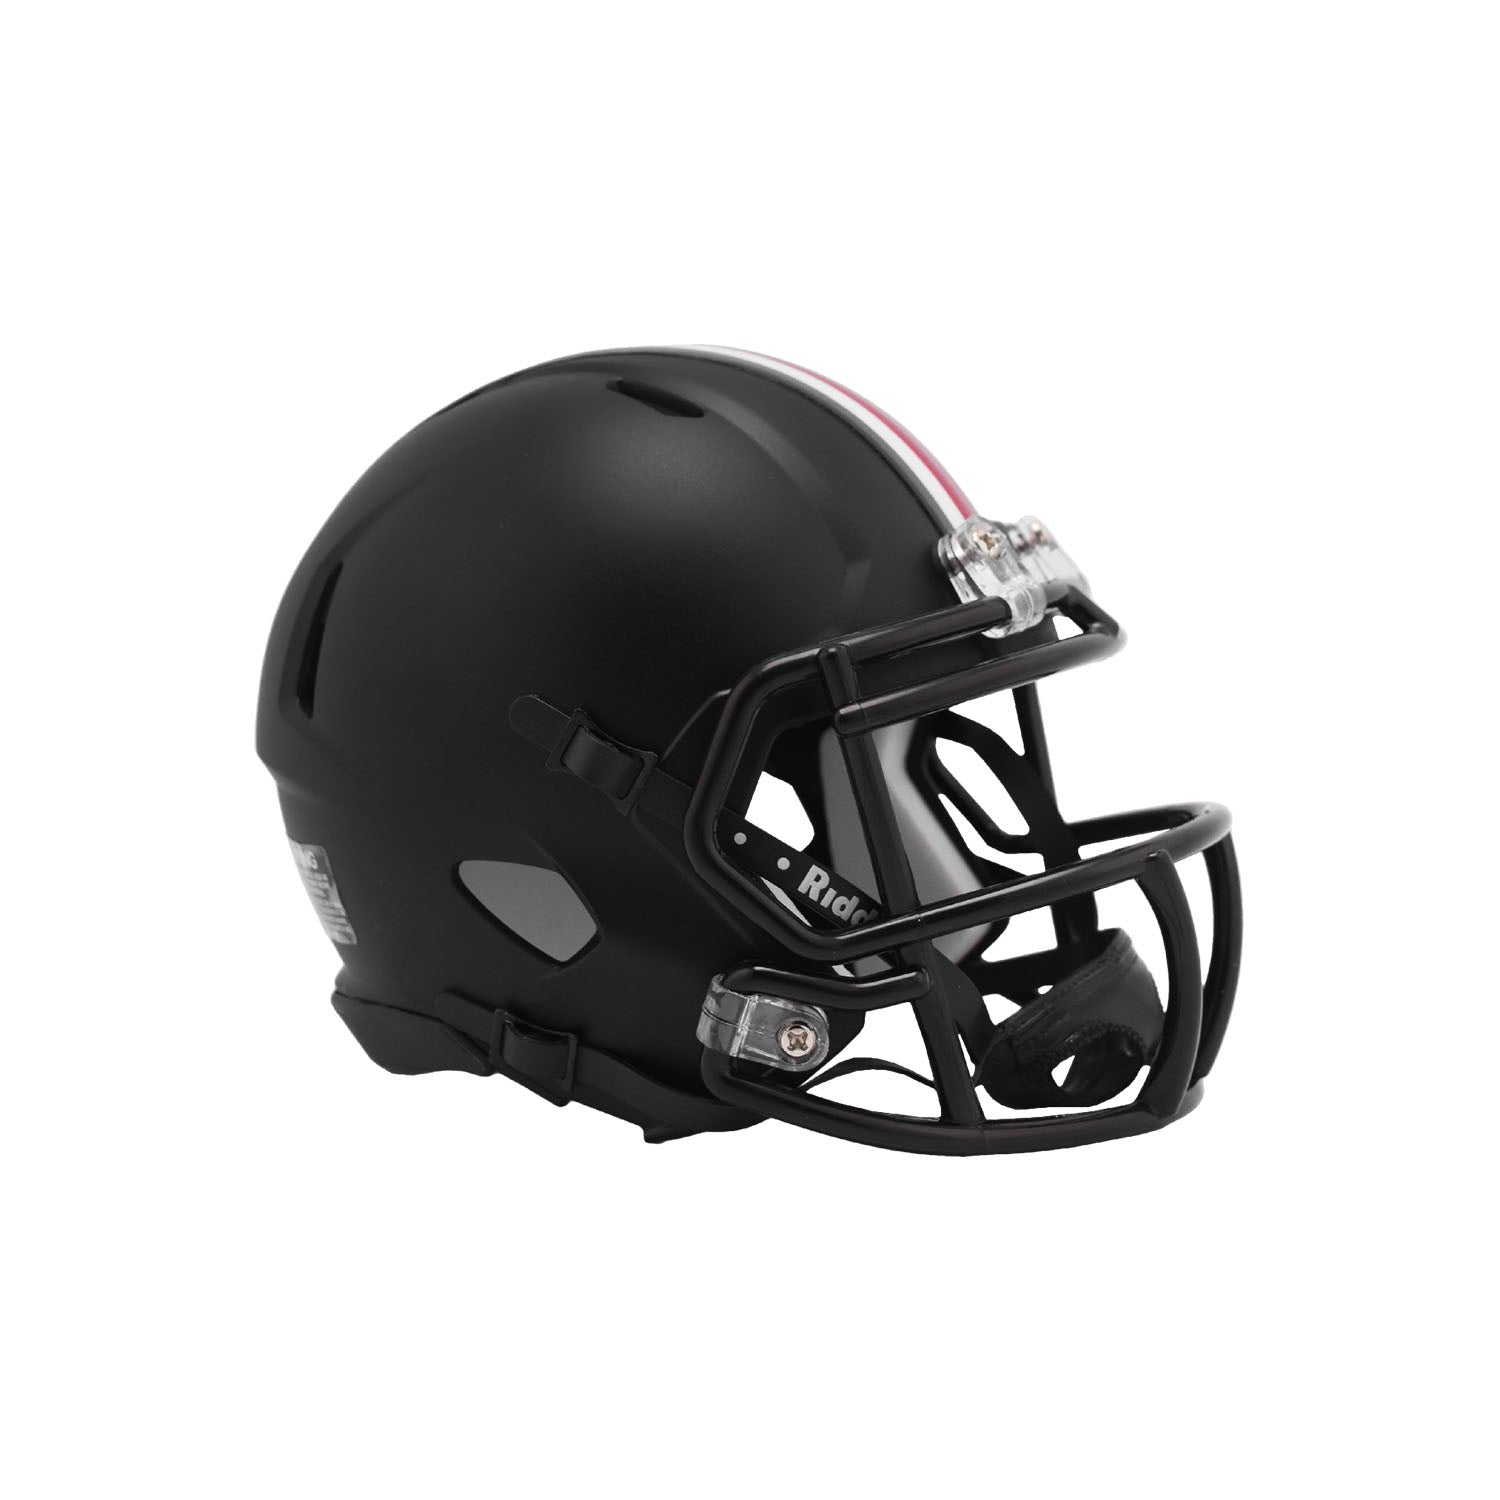 EYE SHIELD / VISOR ONLY! for OHIO STATE BUCKEYES Mini Football Helmet